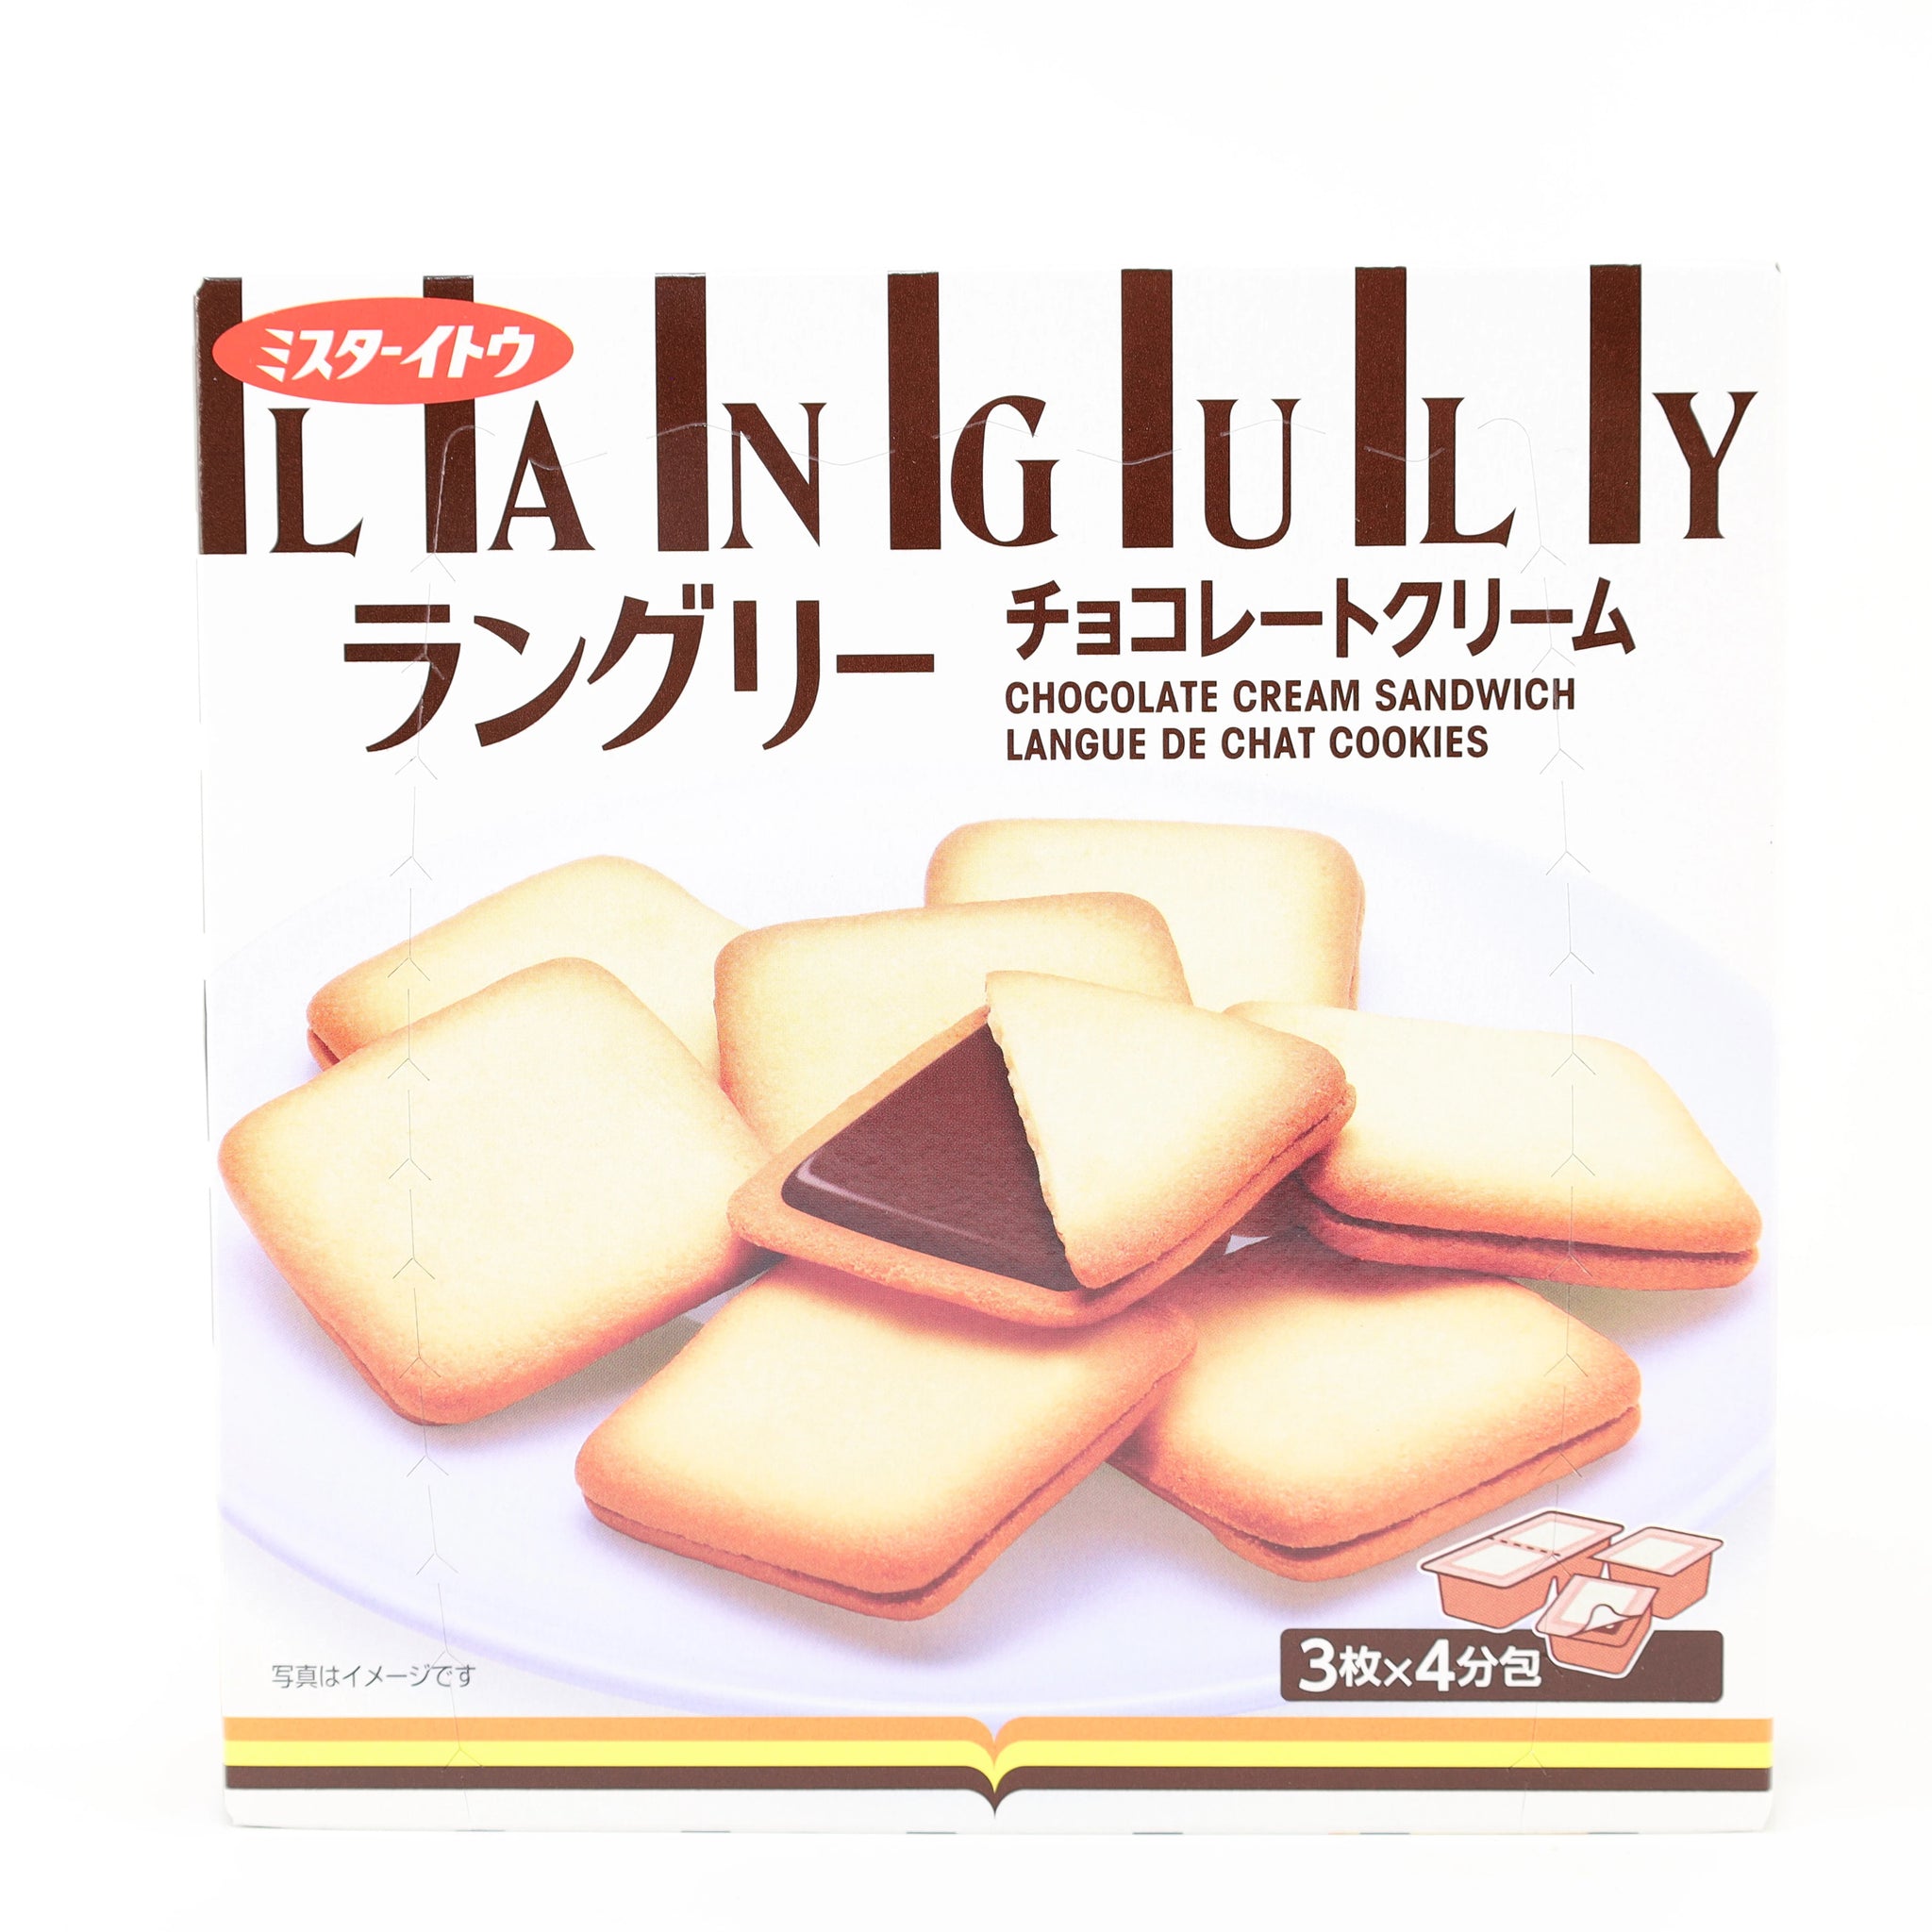 Mr. Ito Languly Choco Cream Cookie